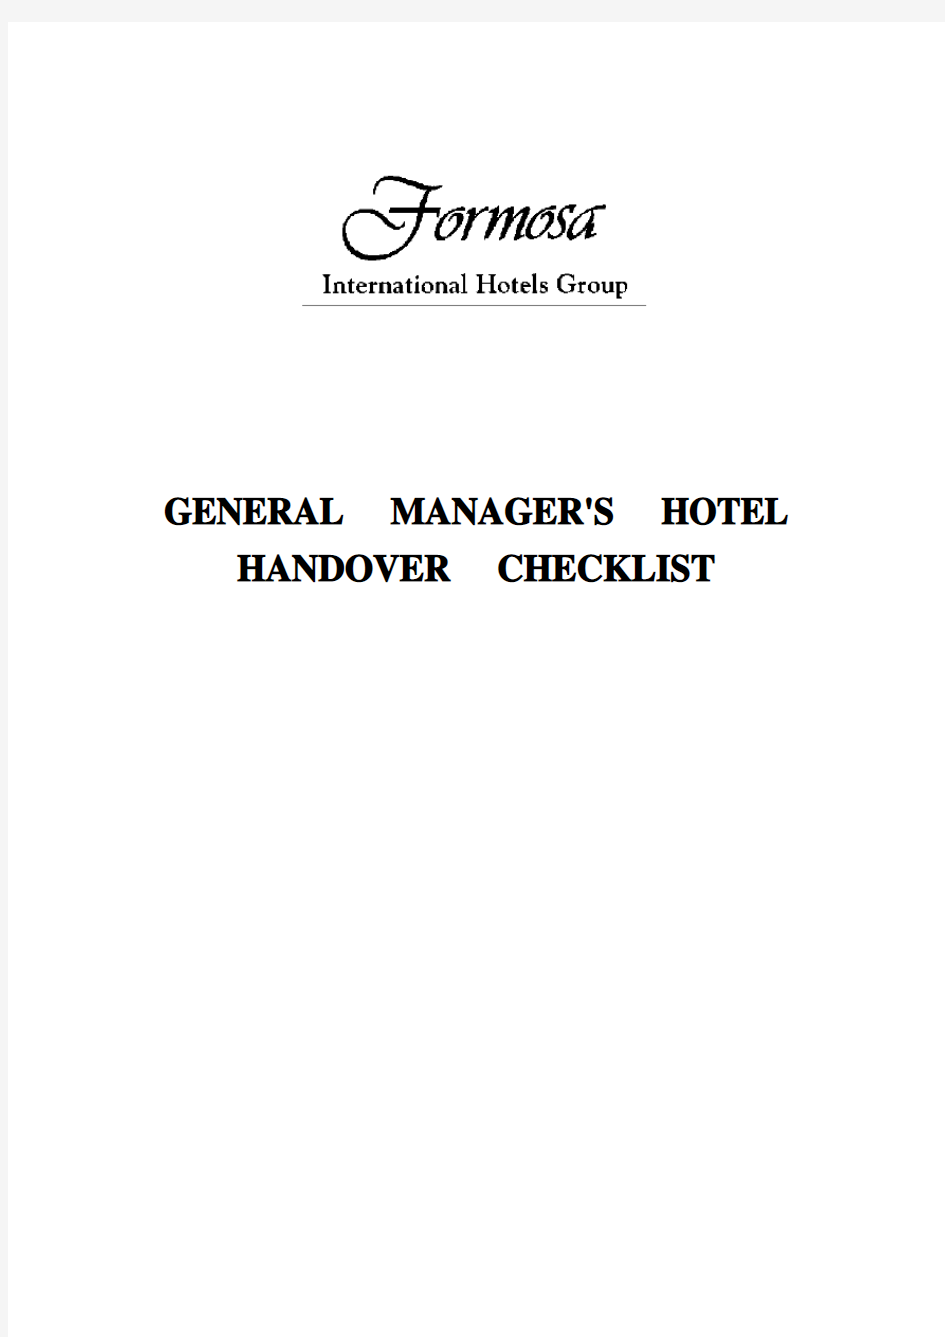 GM Hotel Handover Checklist_Aug